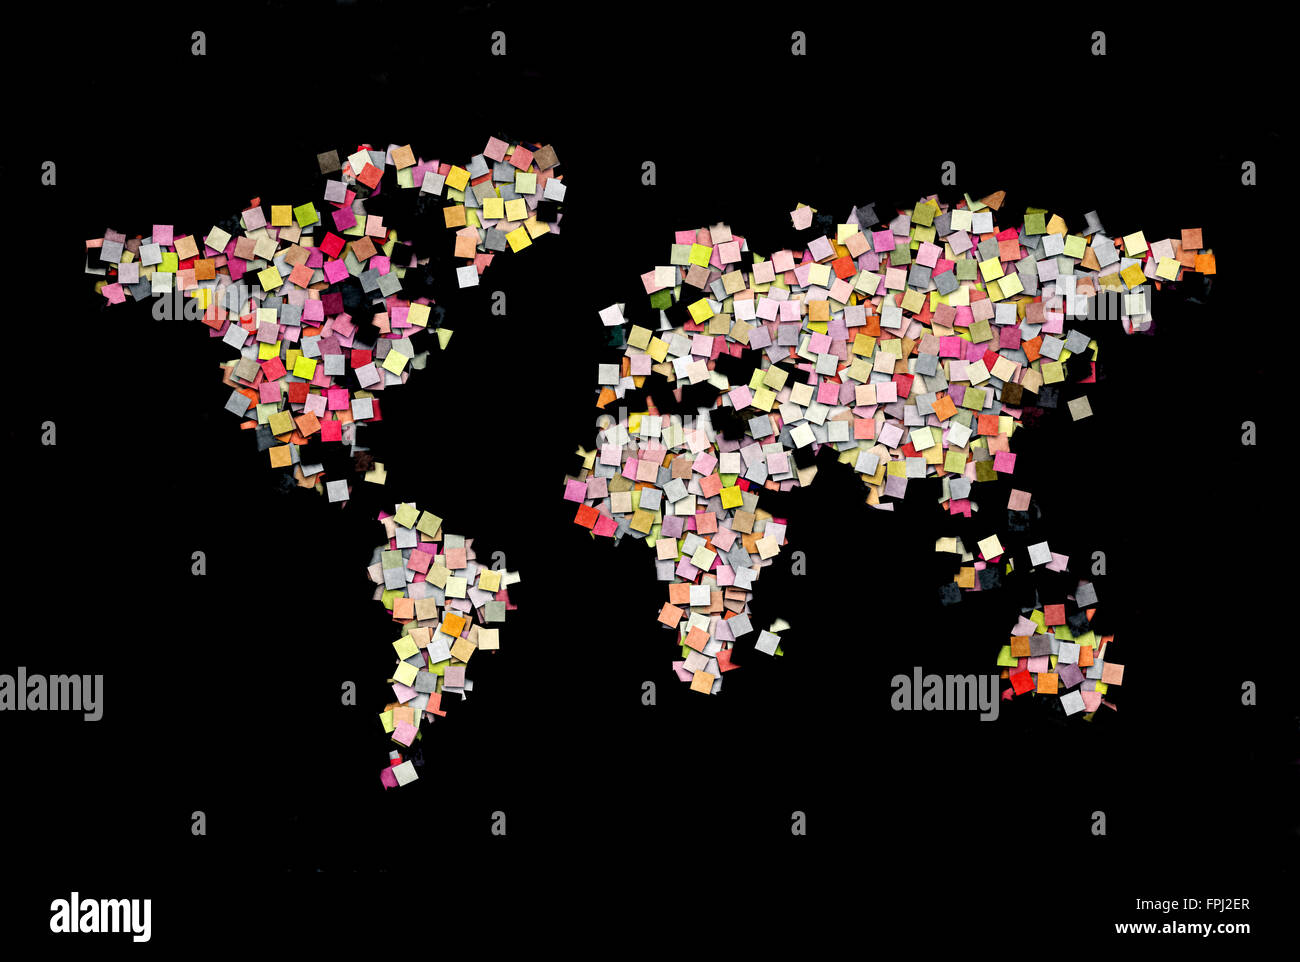 Welt Karte kreative Illustration bauen kleine Papier-Quadrate Stockfoto